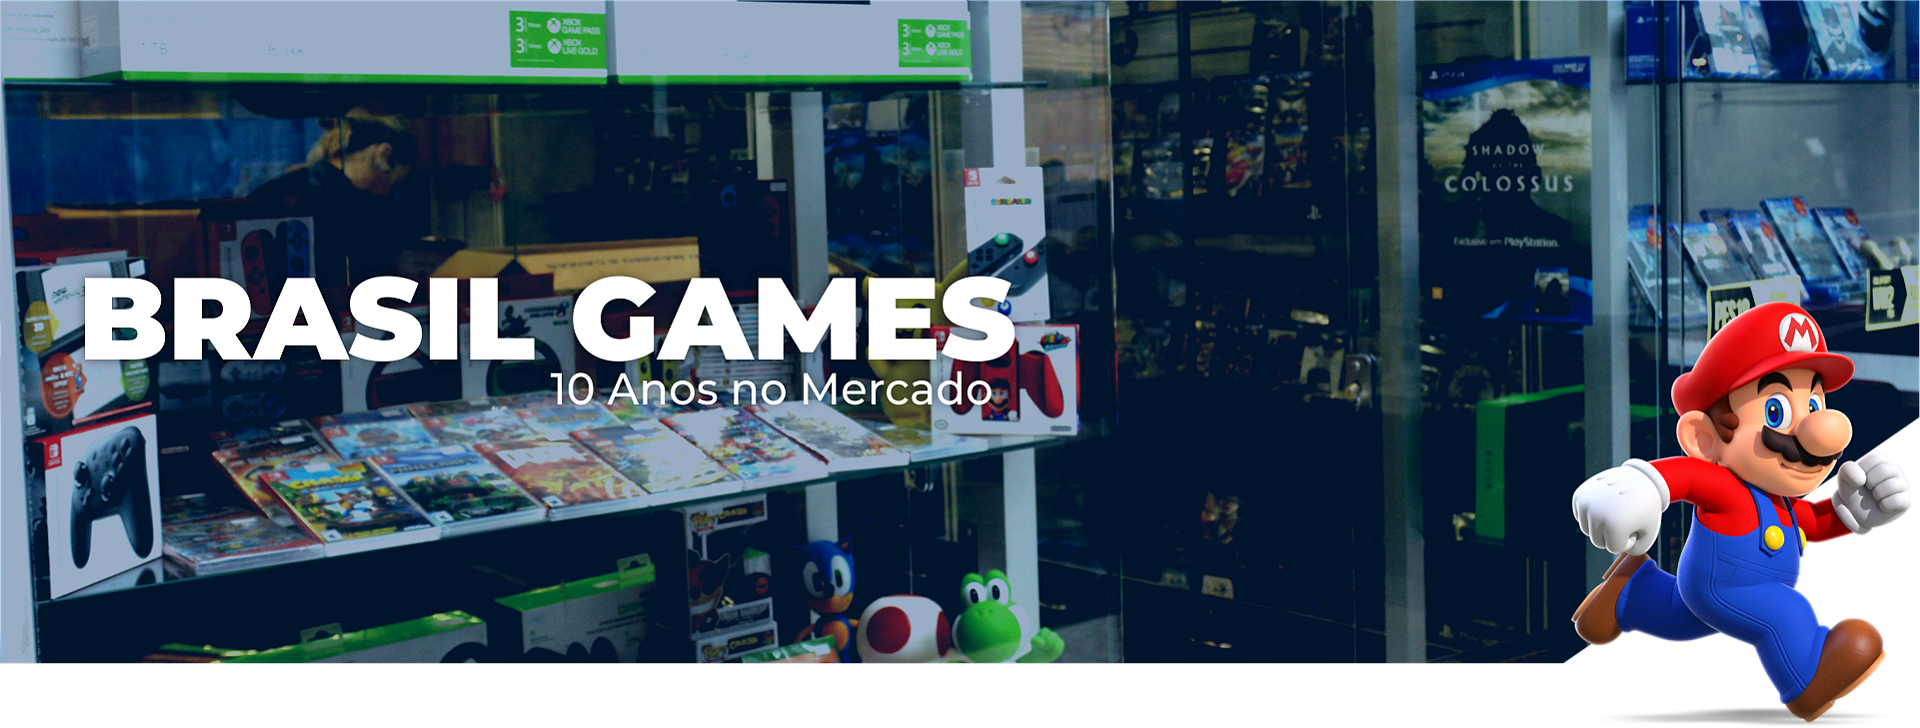 Os melhores jogos aditivos no site 1Win Games - Jornal de Brasília